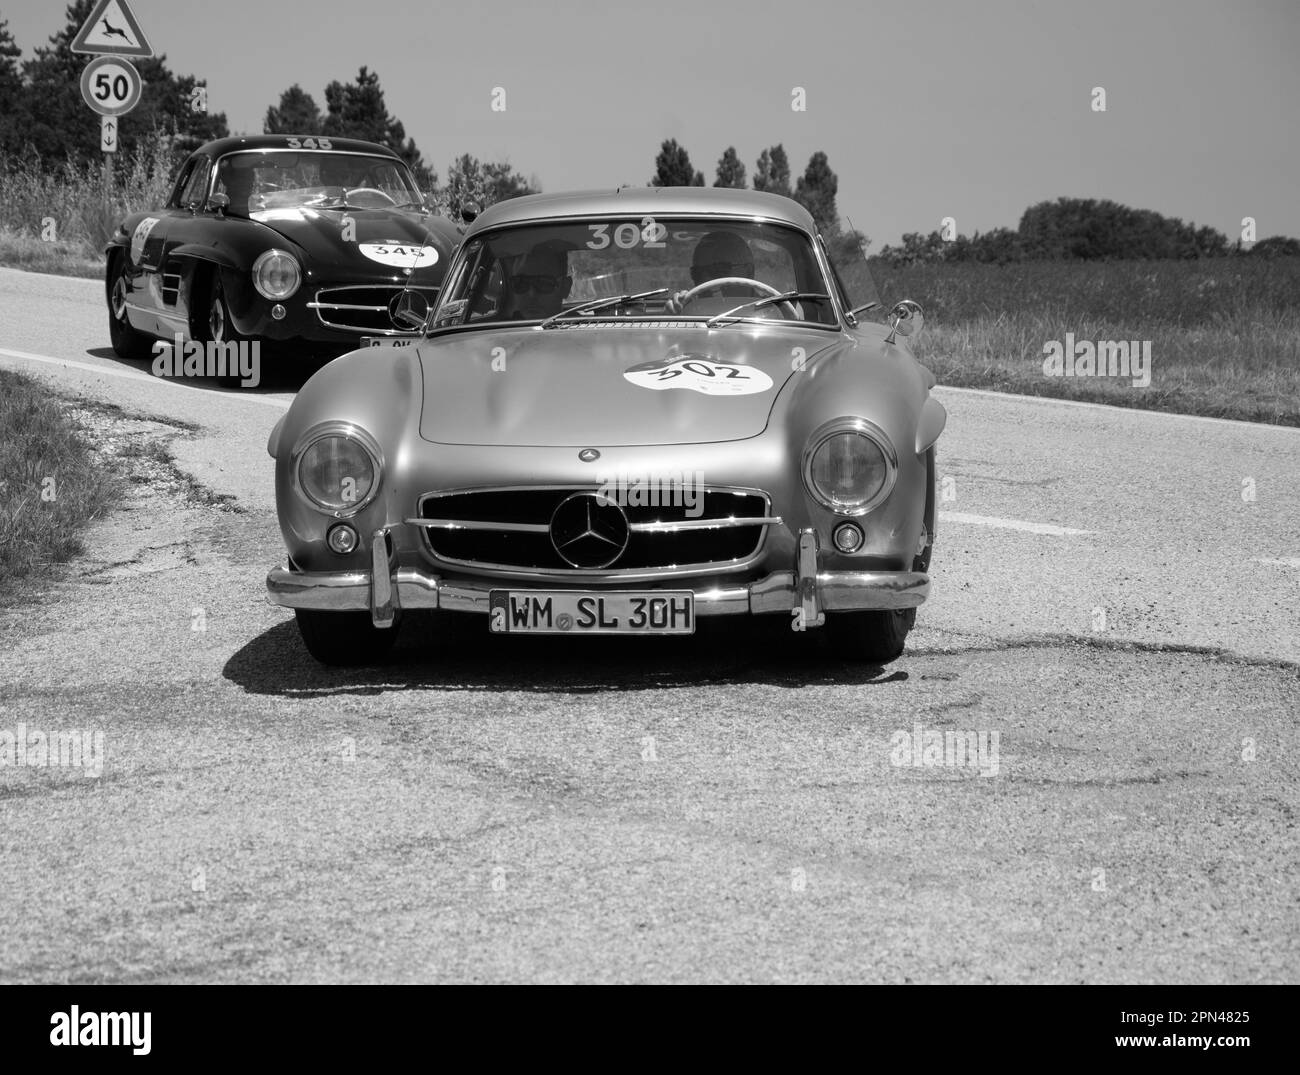 URBINO, ITALIE - 16 JUIN - 2022 : MERCEDES BENZ 300 SL W198 1954 sur une vieille voiture de course en rallye mille Miglia 2022 la célèbre course historique italienne Banque D'Images